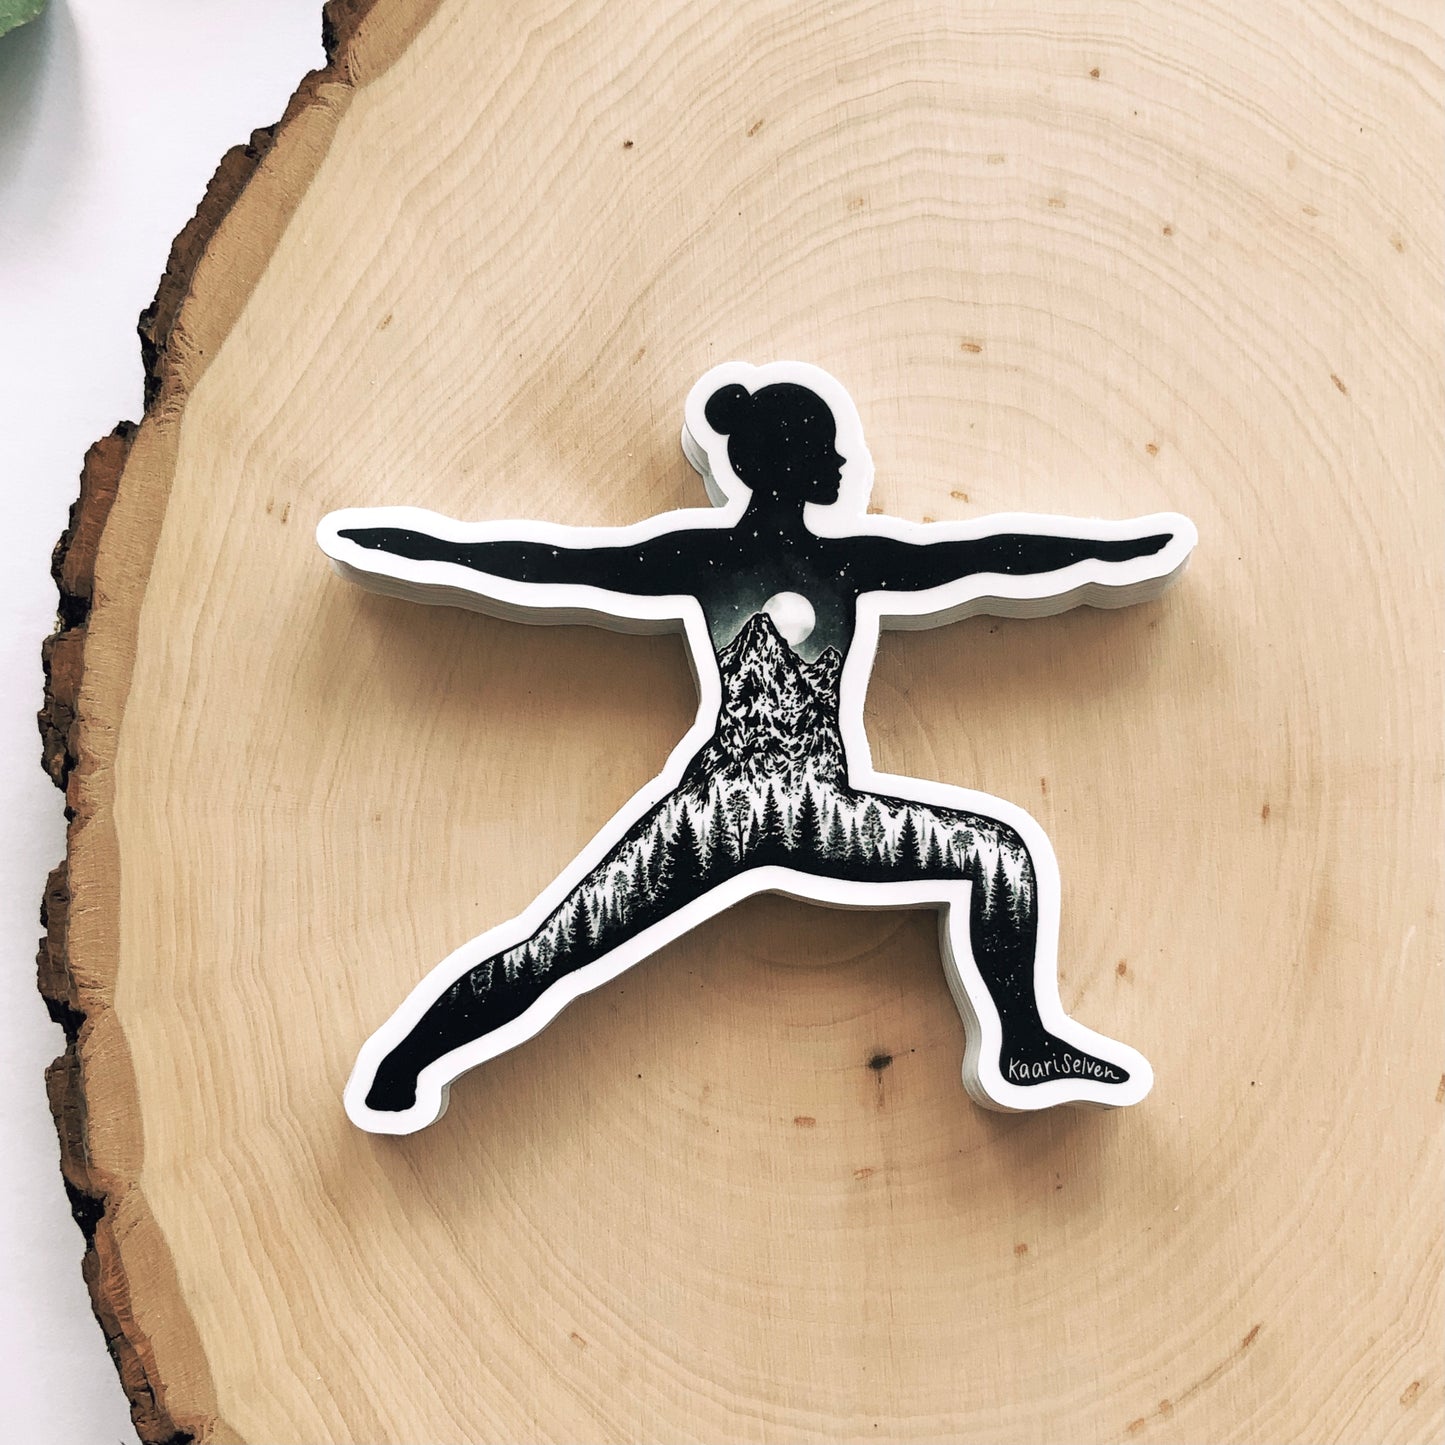 Yoga Pose I Vinyl Sticker